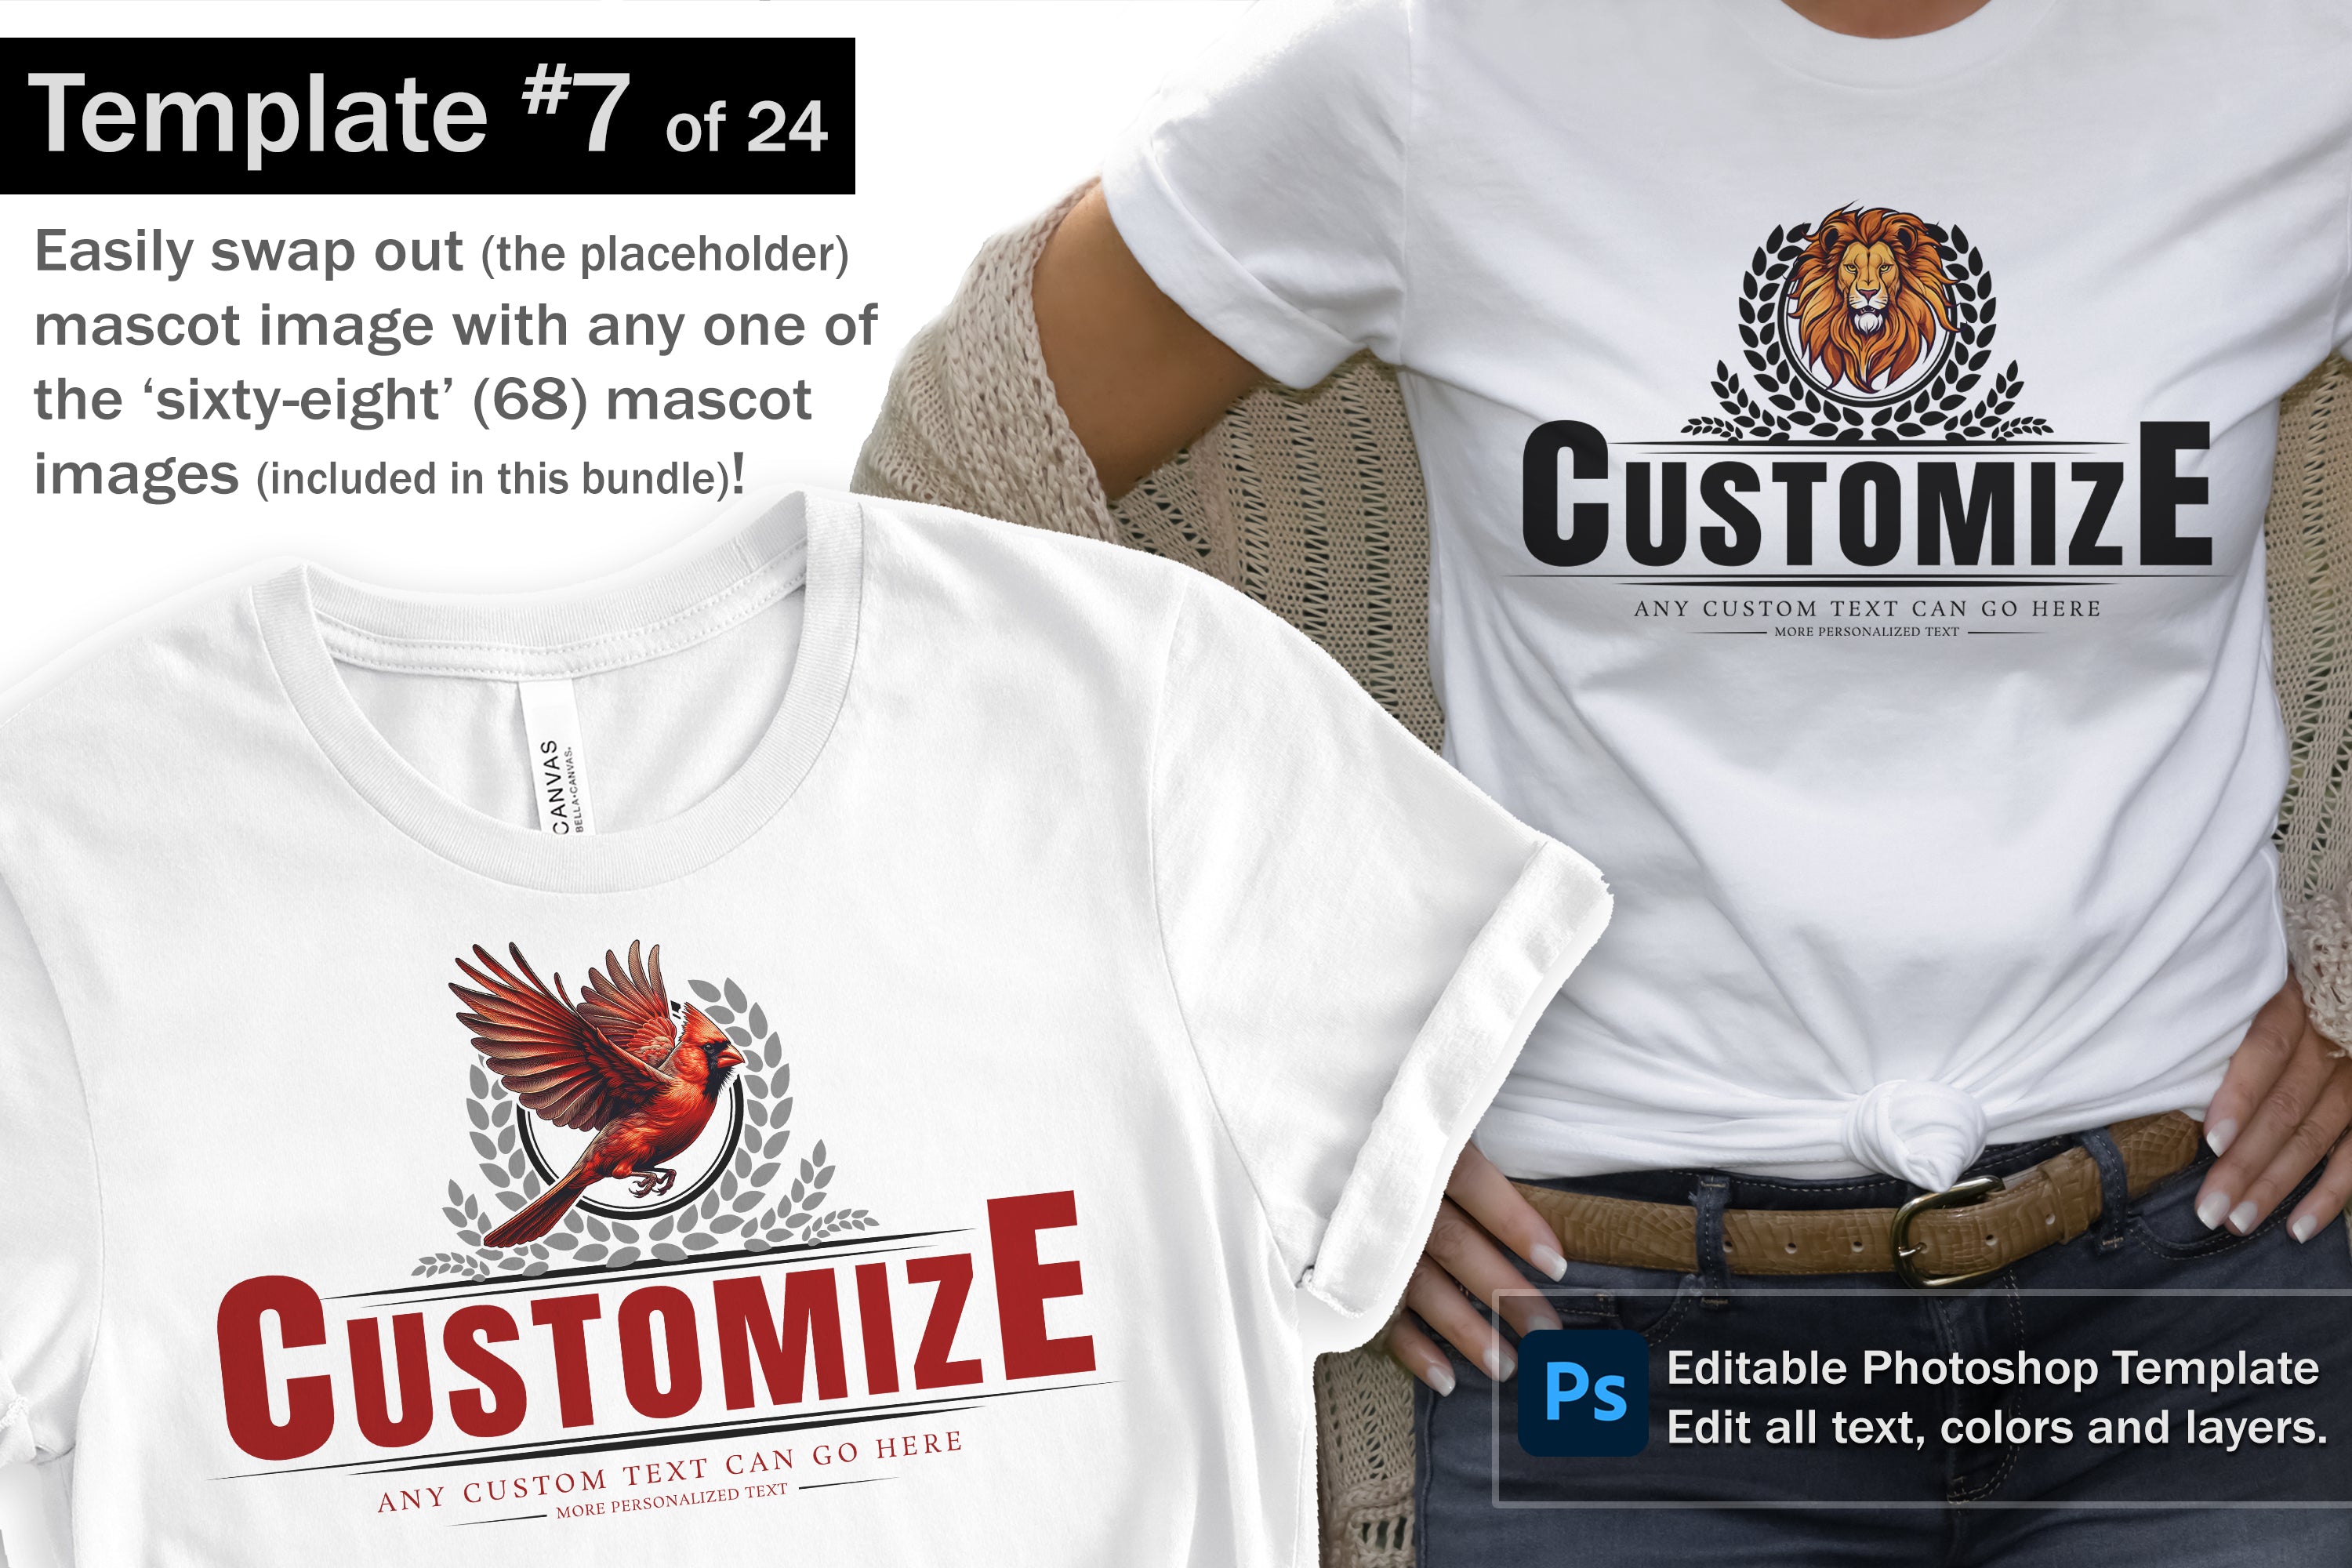 Eagle Logo and DIY T-shirt Design Bundle